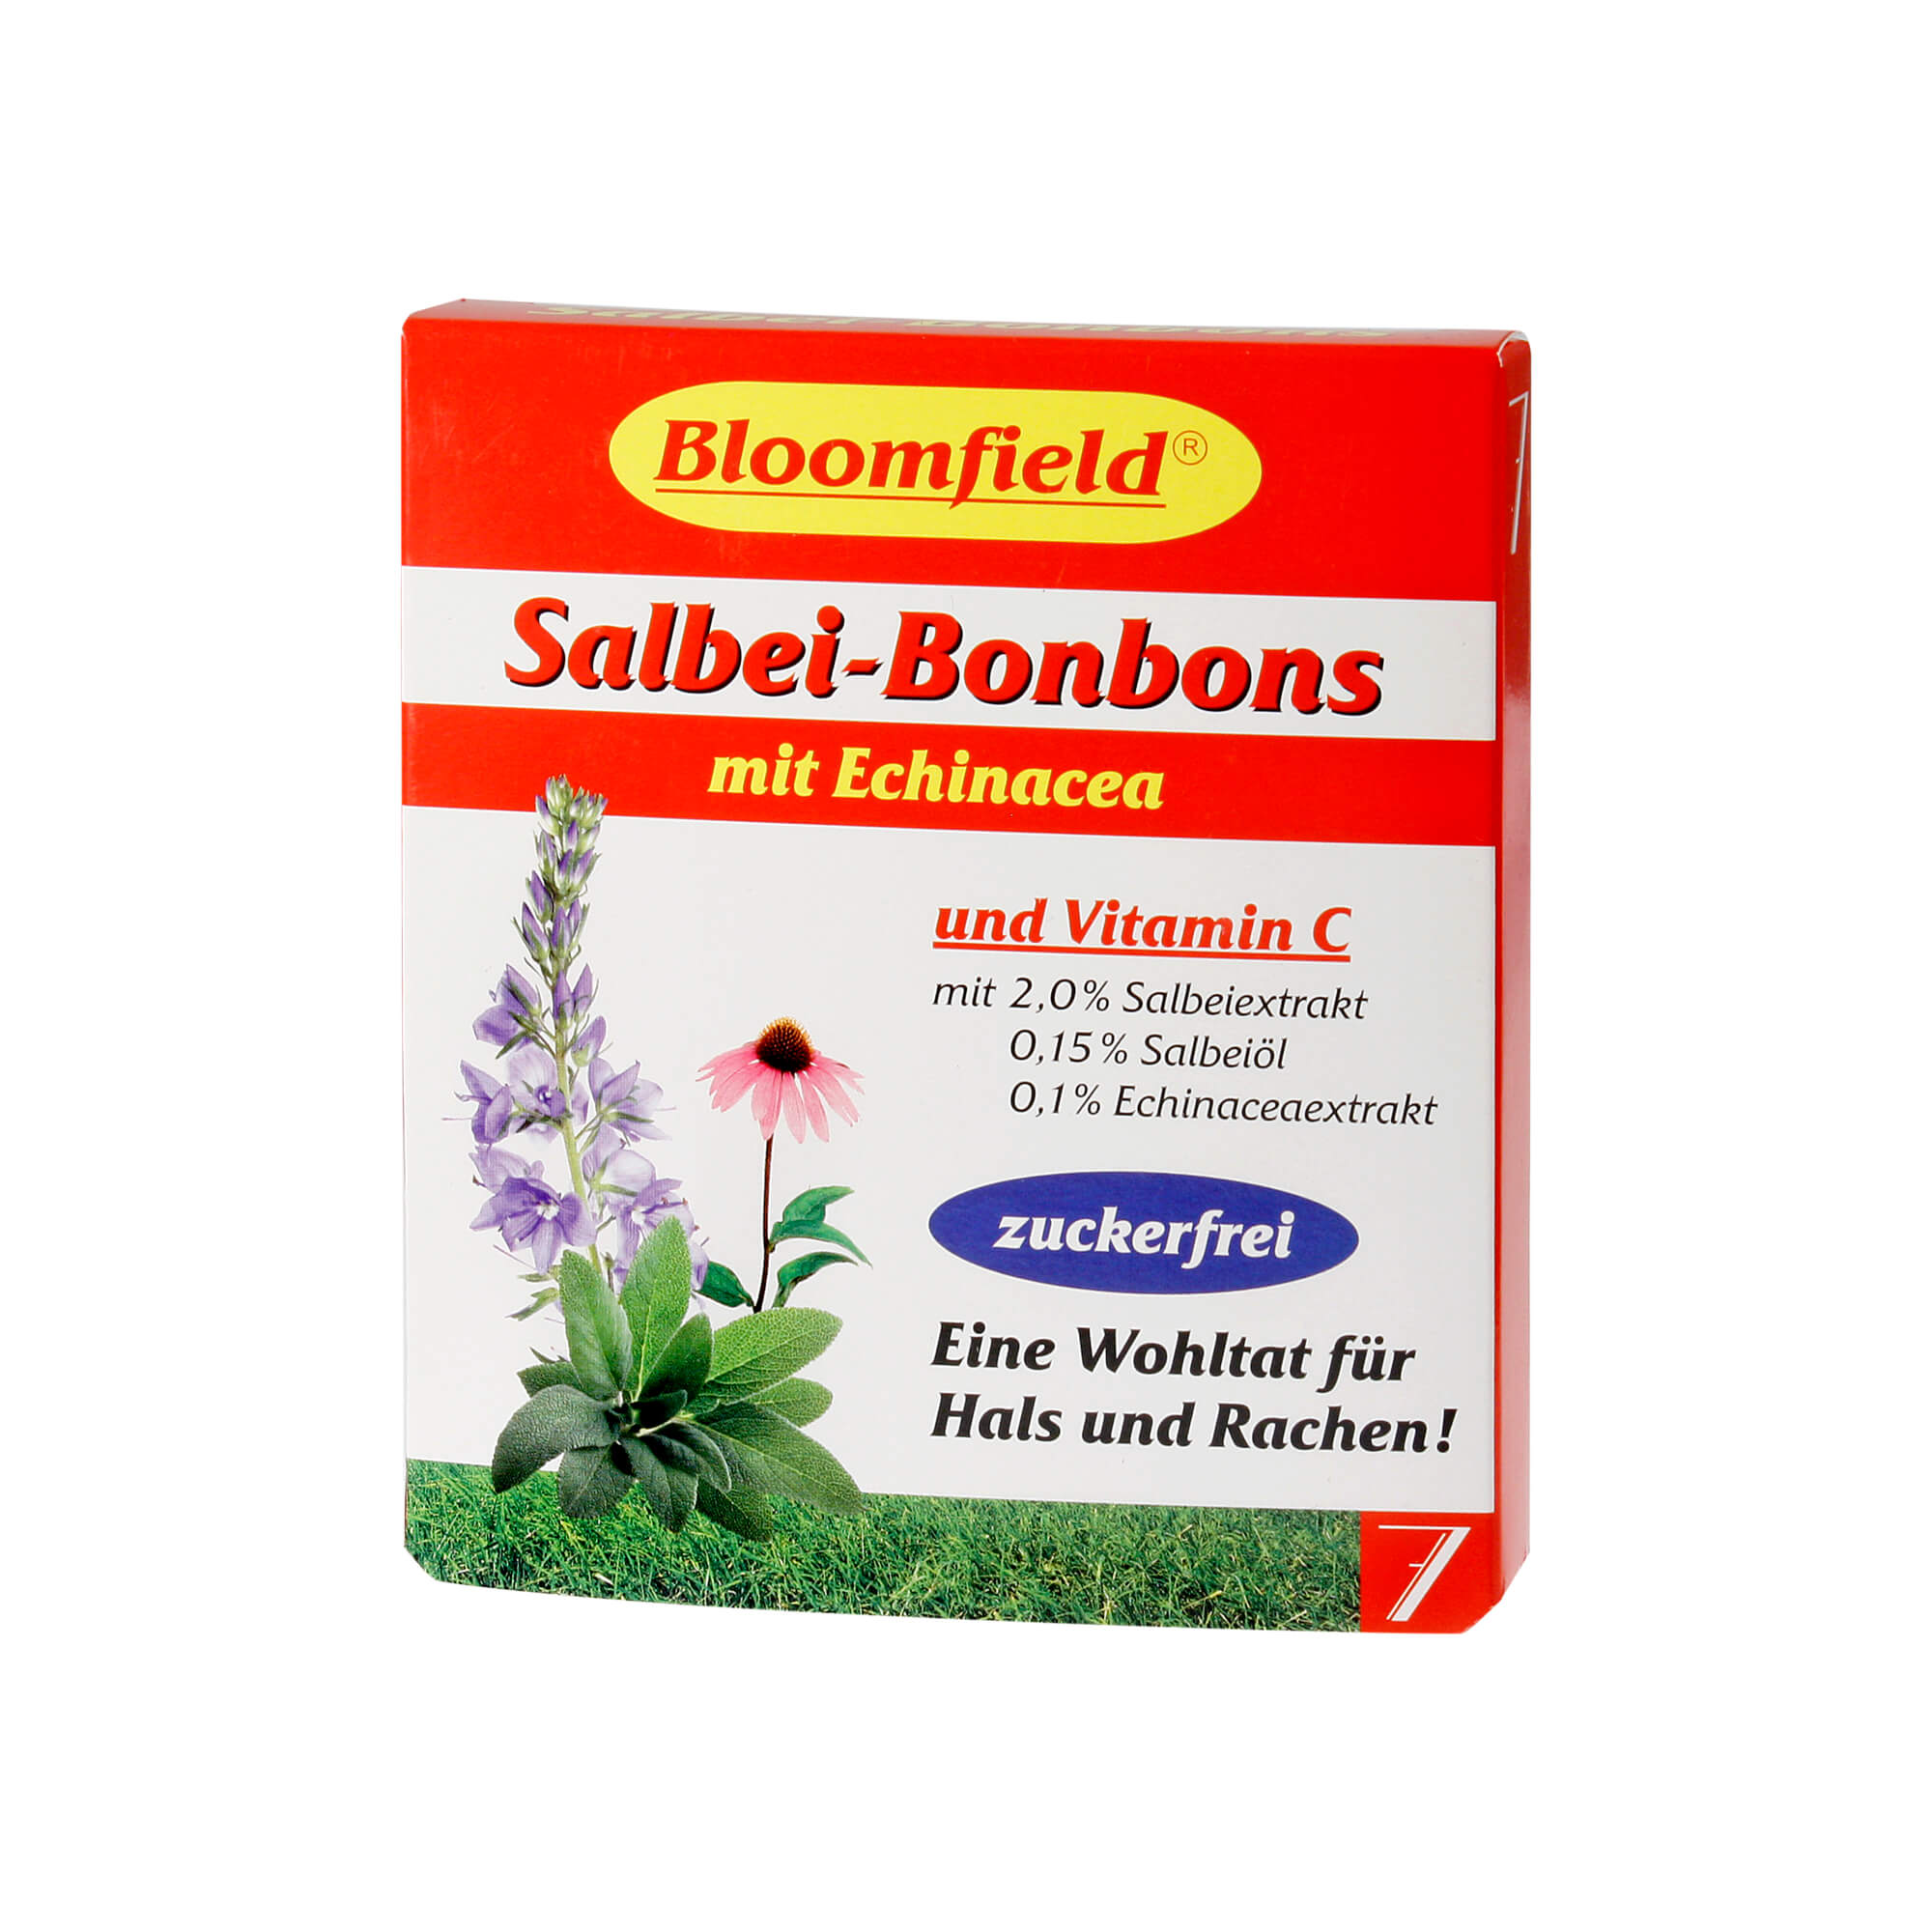 SALBEI BONBONS mit Echinacea und Vitamin C.